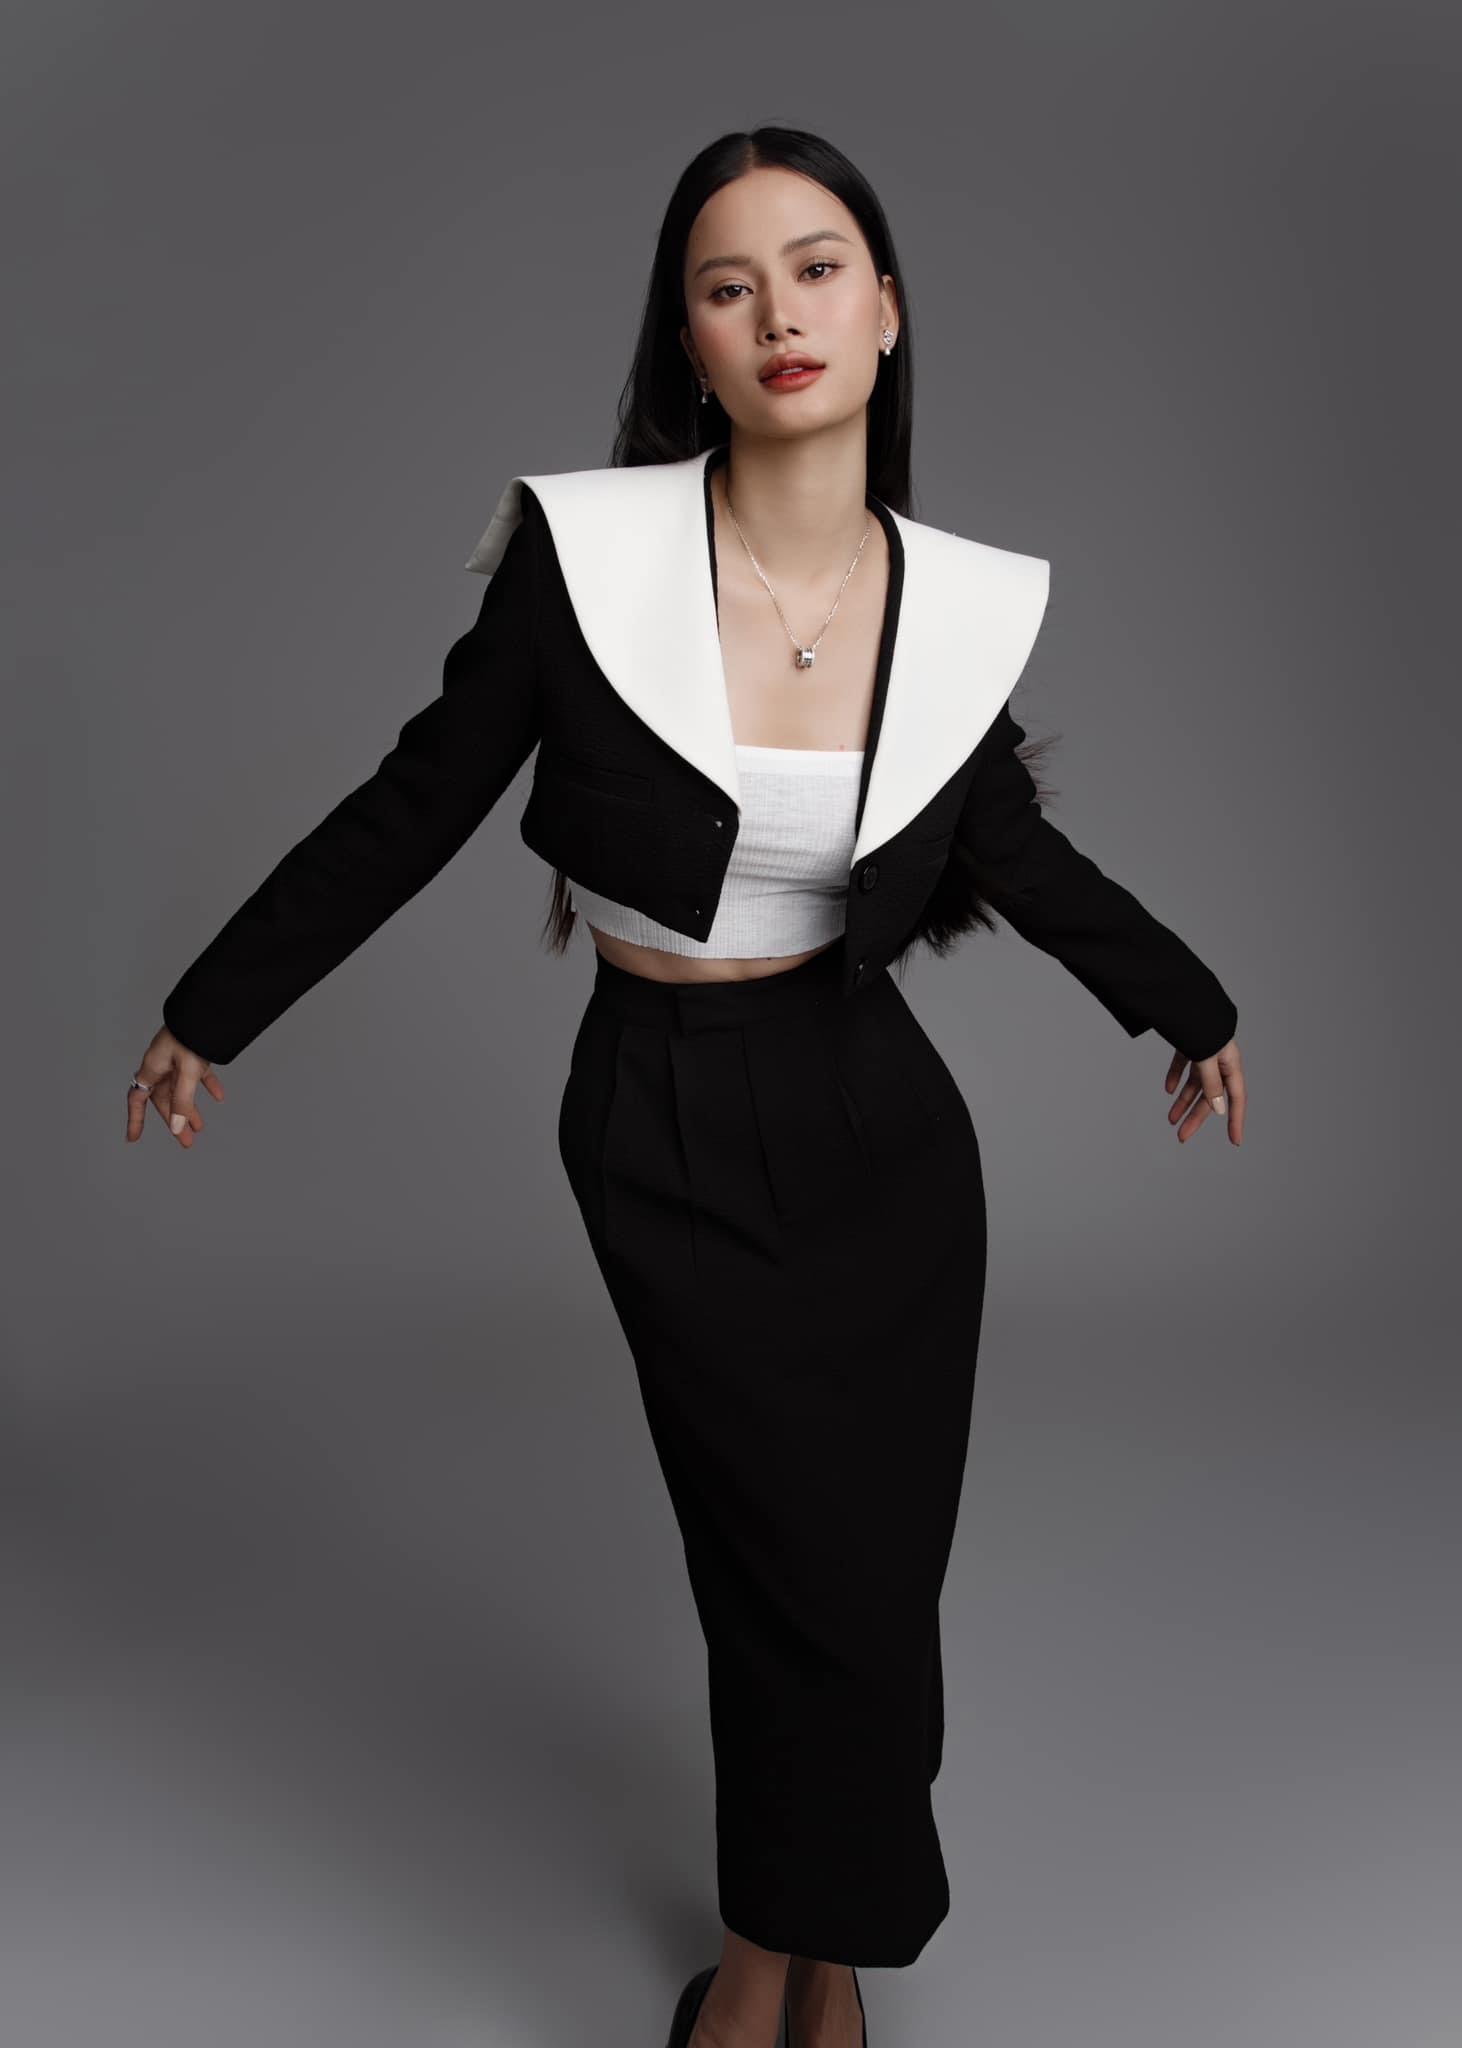 Đến với Miss Universe Vietnam 2023, Hương Ly đã có sự chuẩn bị kỹ lưỡng hơn về hình thể, trình diễn cho đến profile, ứng xử. Hương Ly được giới thiệu là người mẫu, nhà đồng sáng lập thương hiệu thời trang bền vững, được trình diễn tại London Fashion Week.